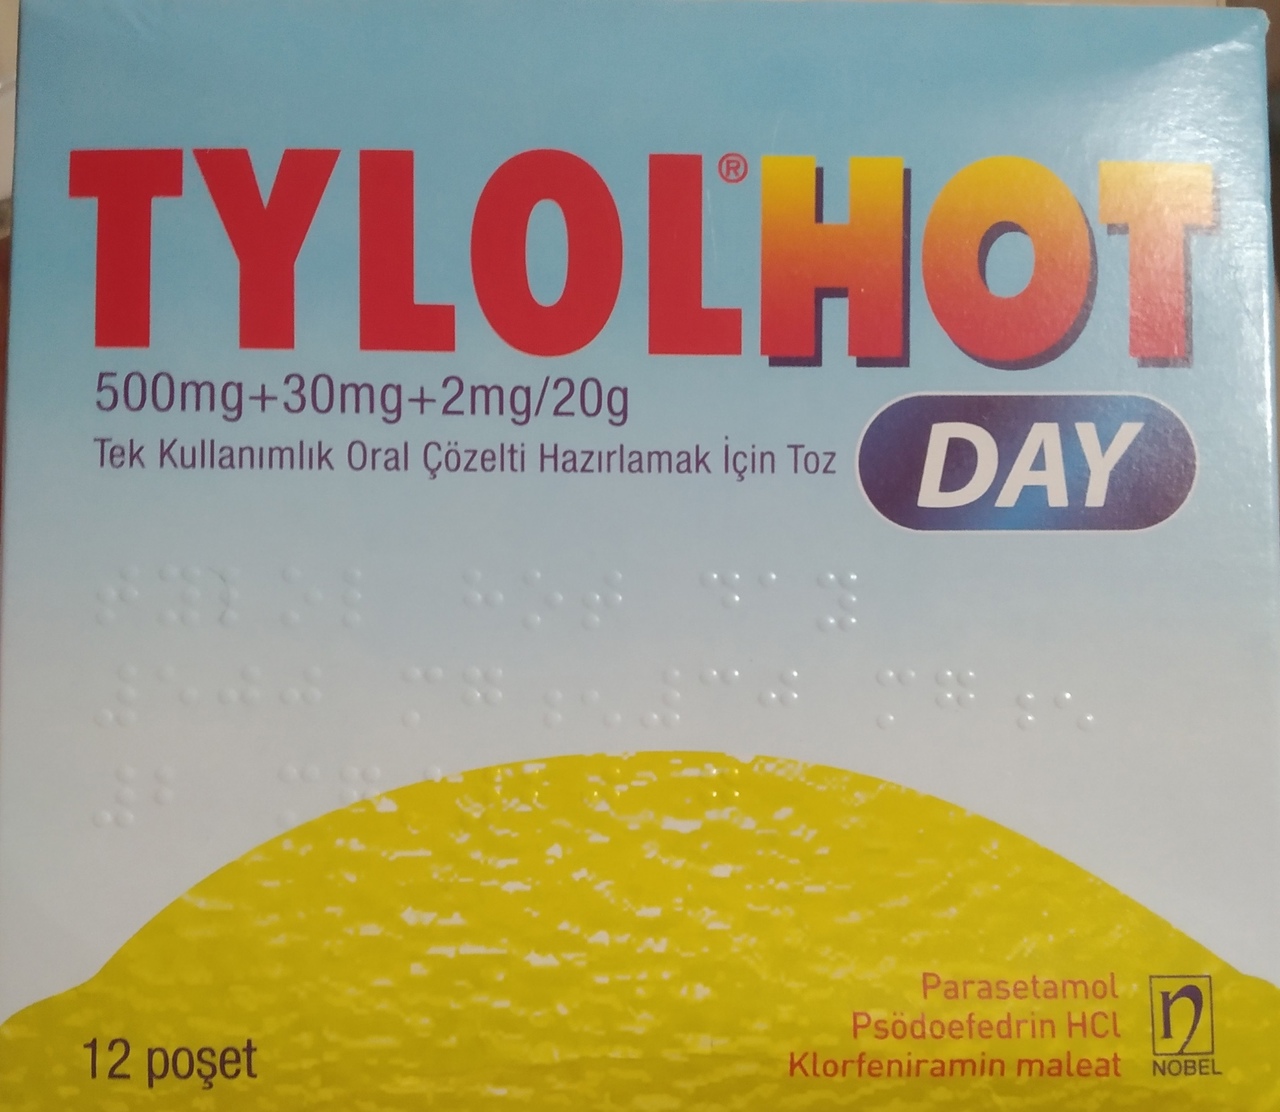 Средства д/лечения простуды и гриппа Nobel TYLOLHOT. 